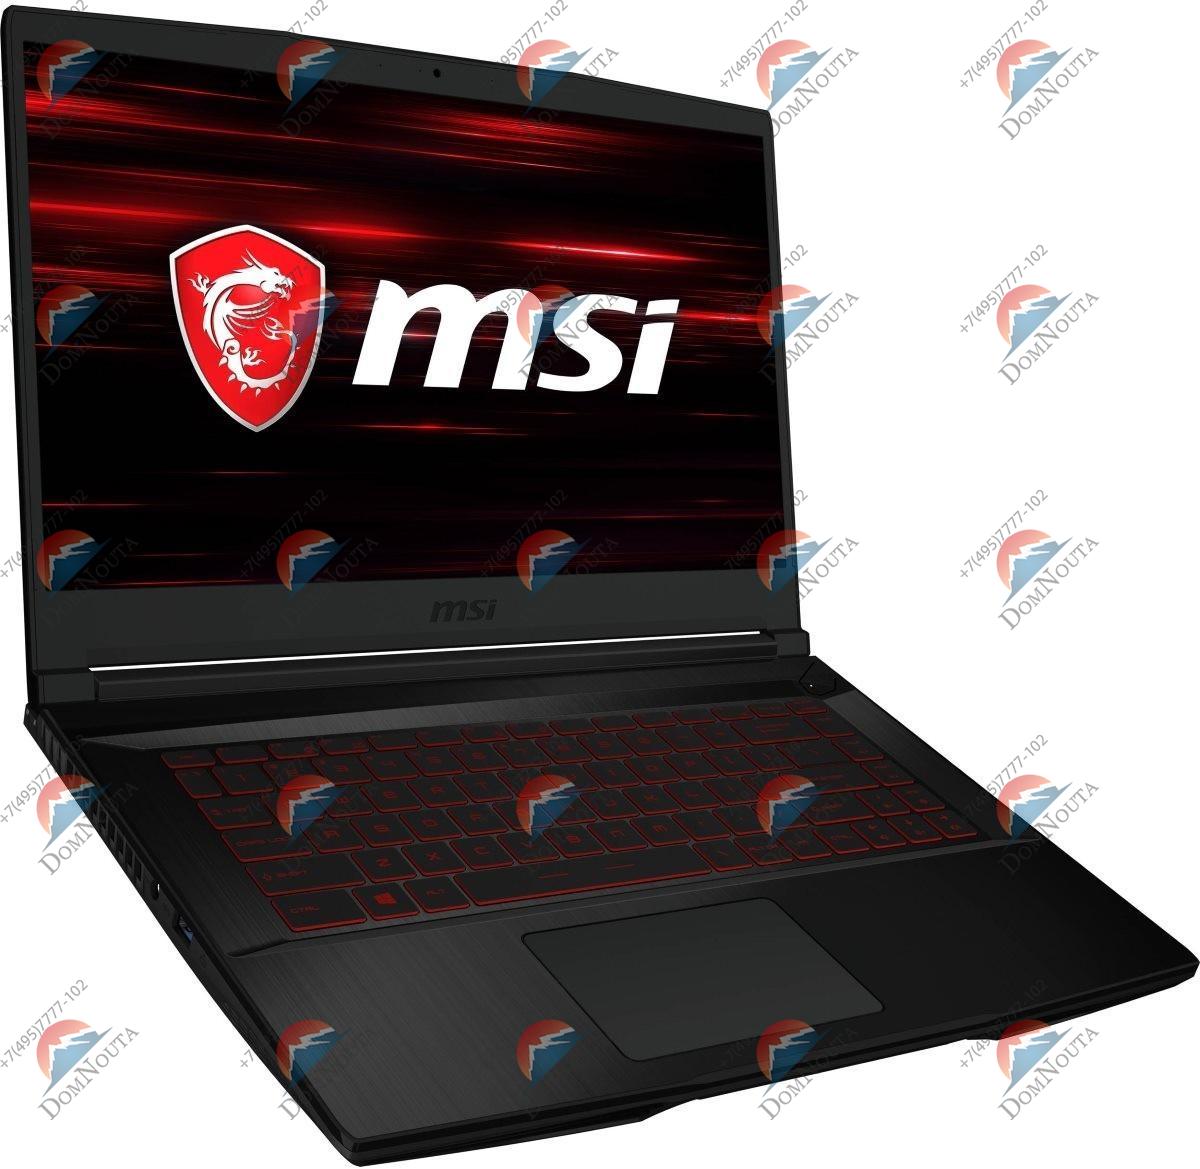 Ноутбук MSI GF63 9SCSR-1001RU Thin